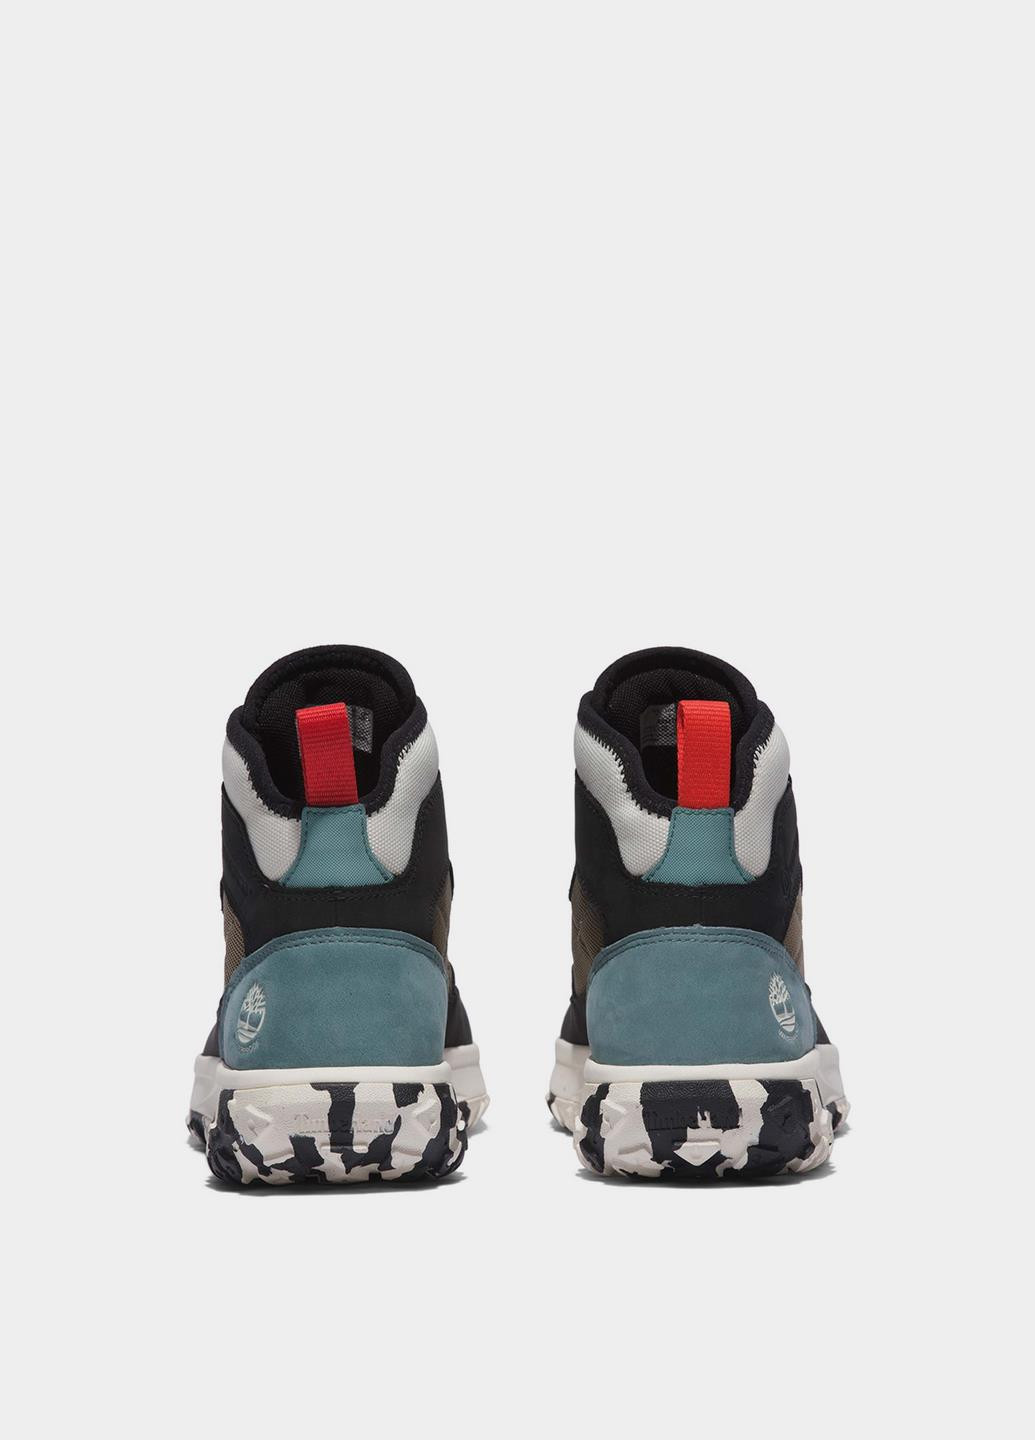 Зимние женские ботинки waterproof greenstride™ motion 6 hiker tb0a2mt9015 Timberland из натурального нубука, тканевые